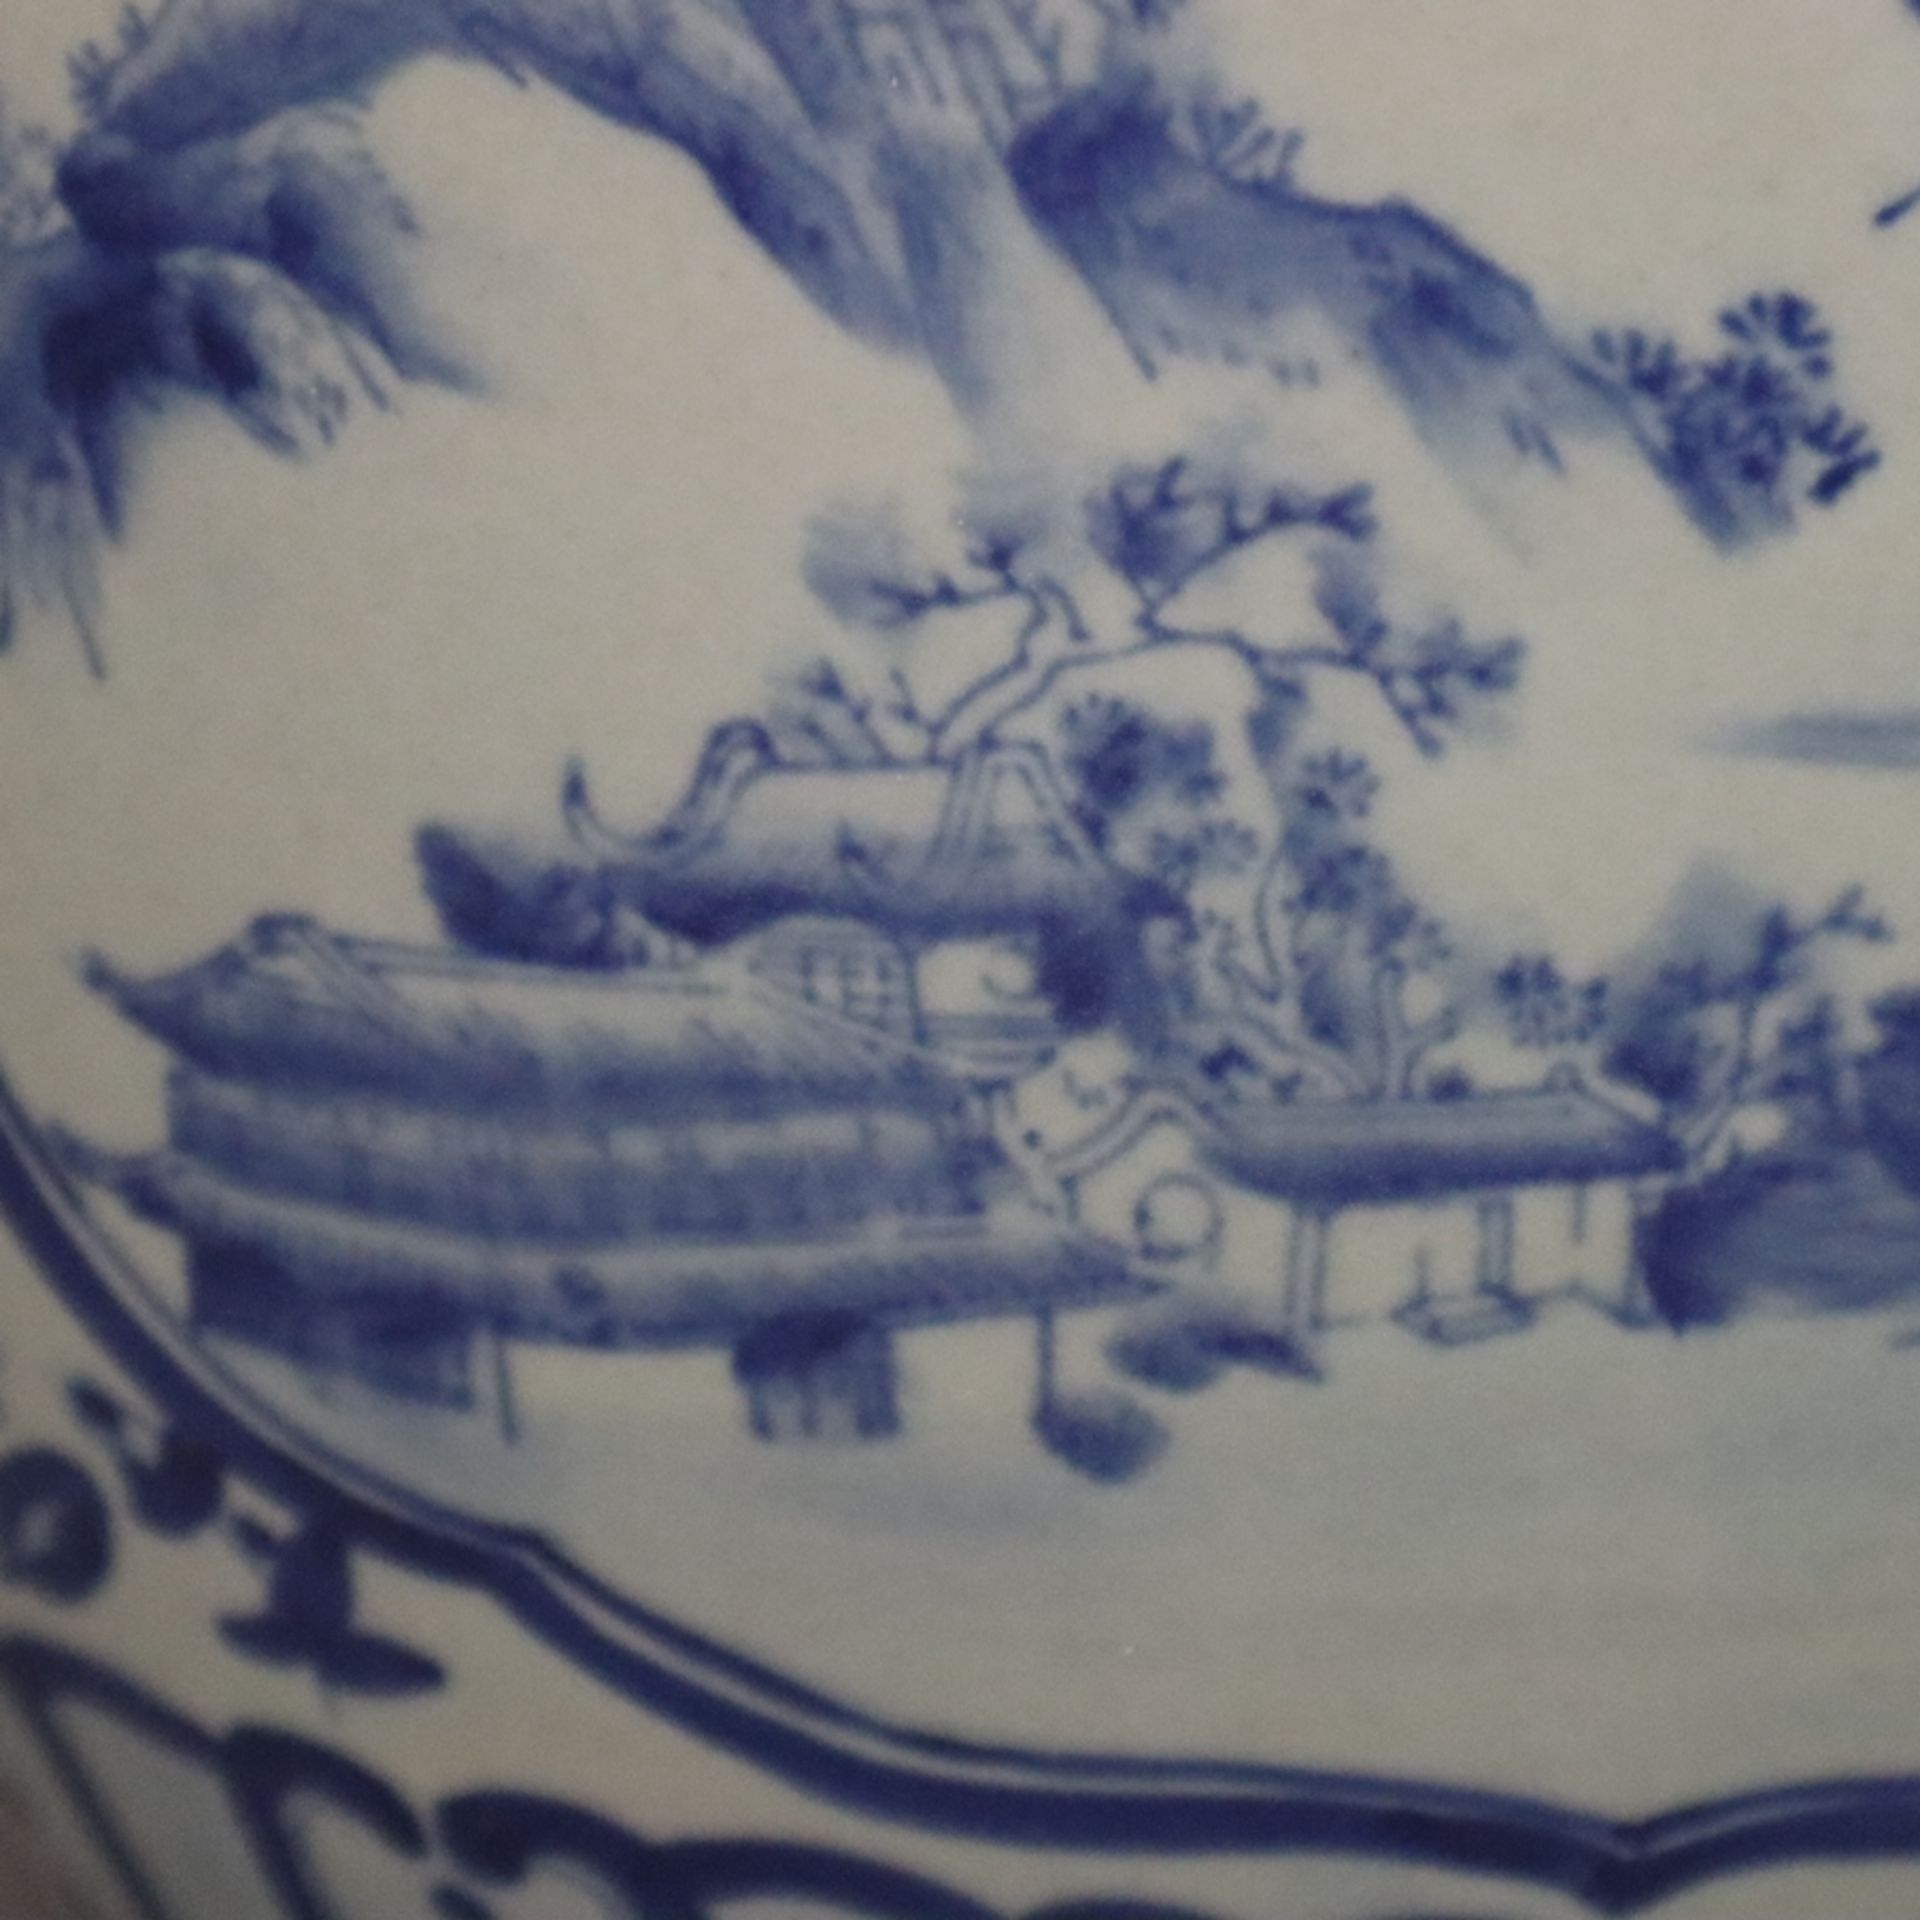 Blau-weißer Cachepot - China, 20. Jh., Porzellan, blau-weiß bemalt, bauchiger Korpus mit eingezogen - Bild 7 aus 9